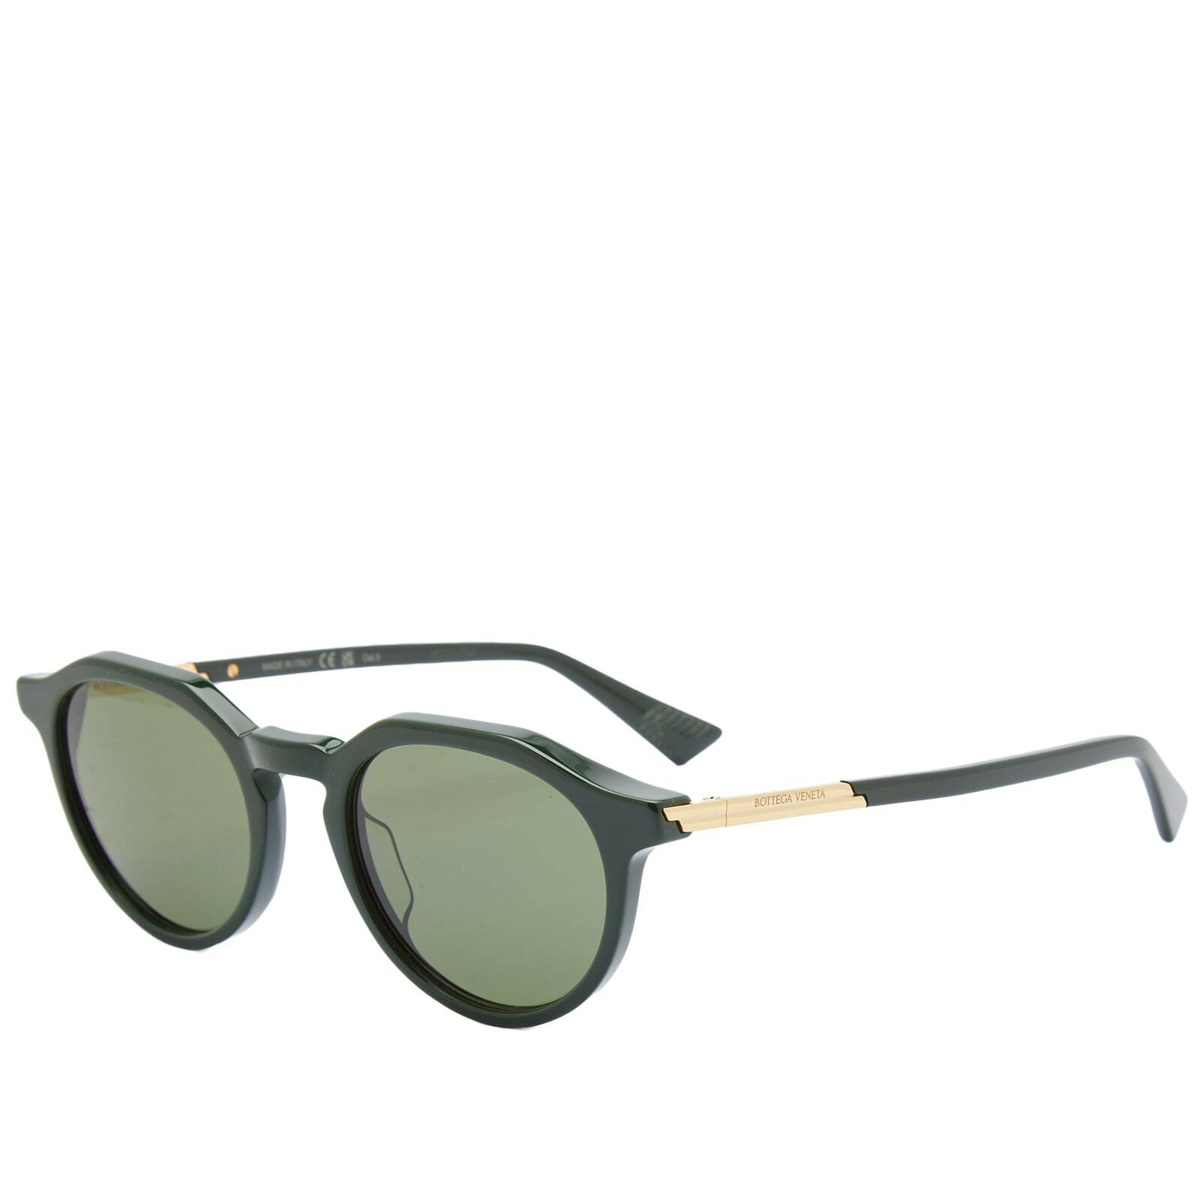 Bottega Veneta Eyewear - D-Frame Wraparound Acetate Sunglasses - Mens - Dark Green